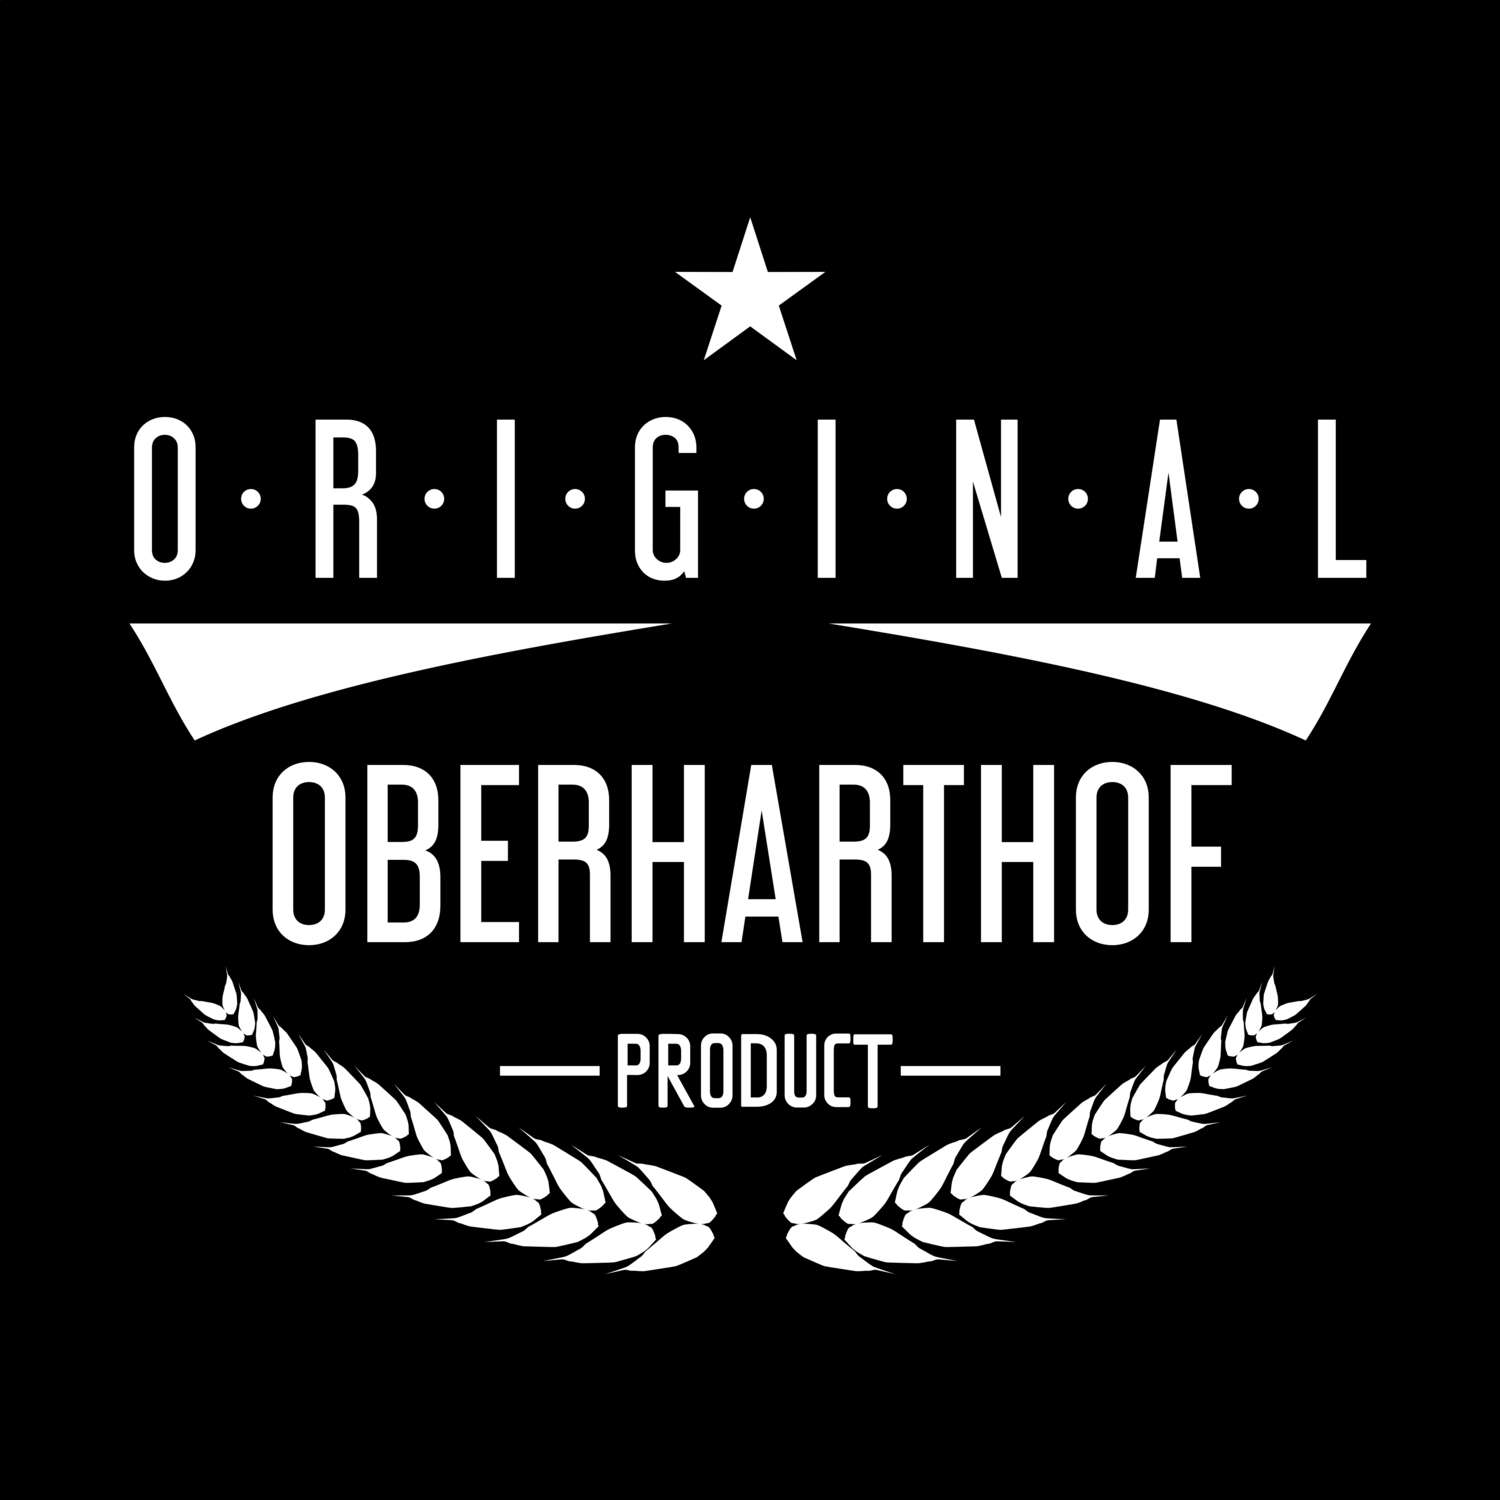 Oberharthof T-Shirt »Original Product«